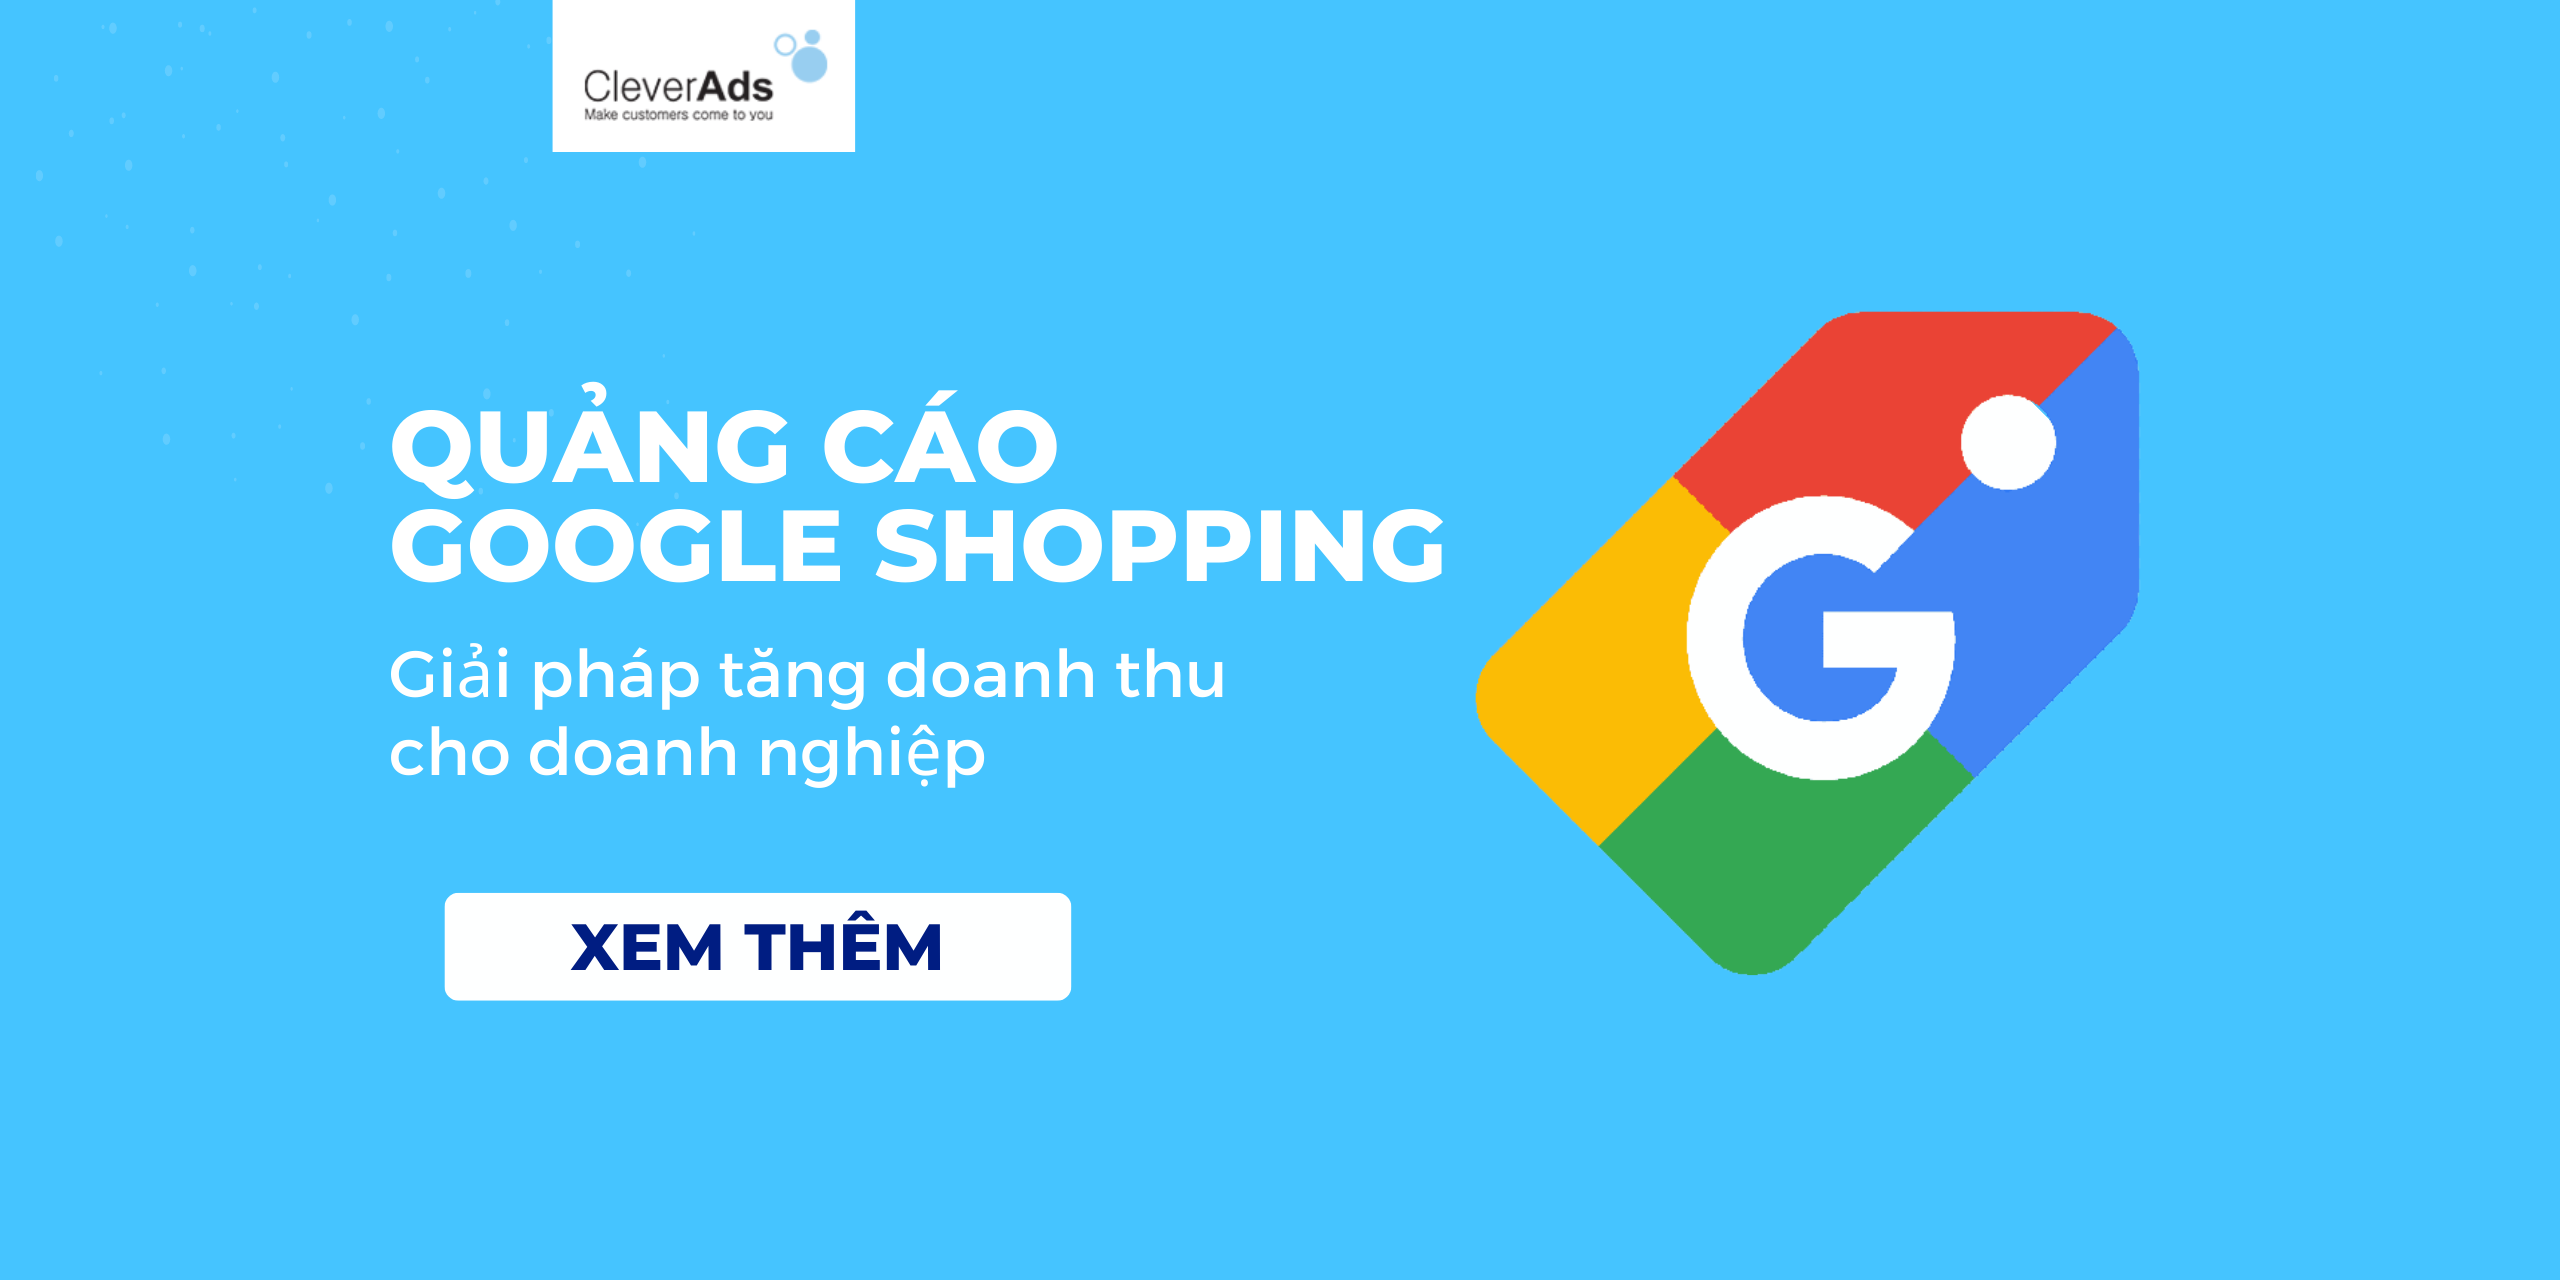 Quảng cáo Google Shopping: Giải pháp tăng doanh thu cho doanh nghiệp